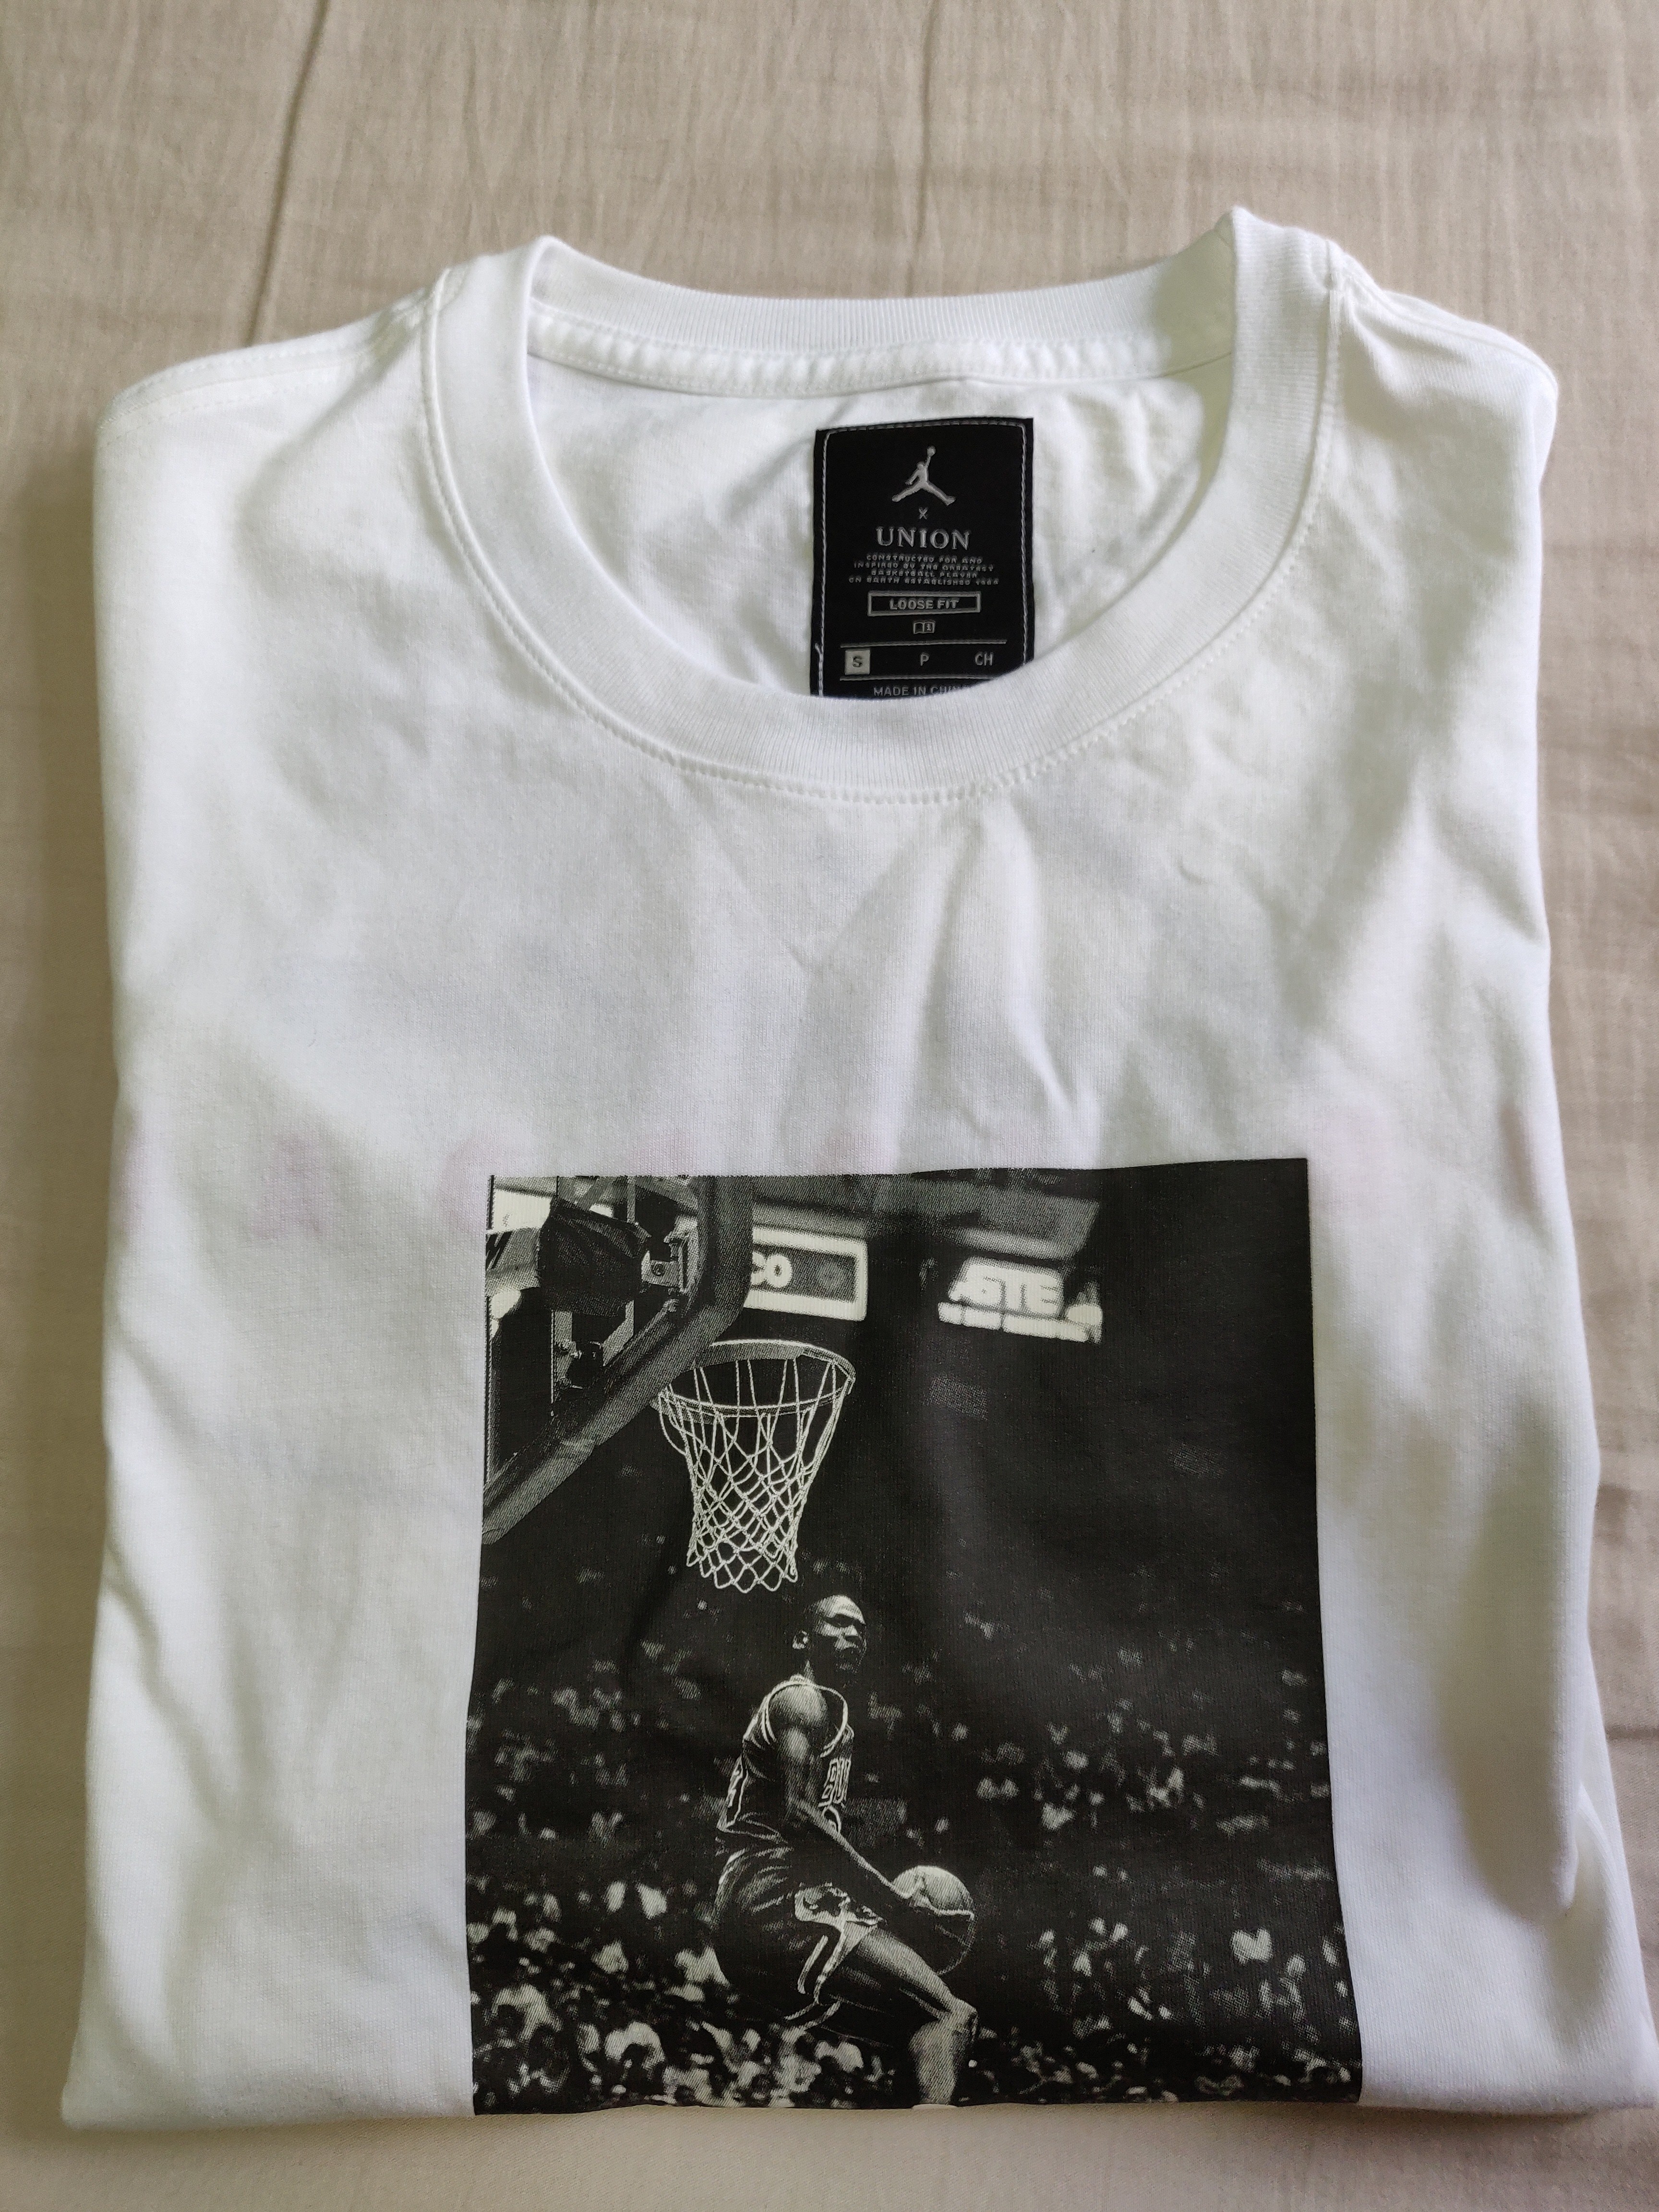 Jordan X Union Reverse Dunk T-Shirt white size S